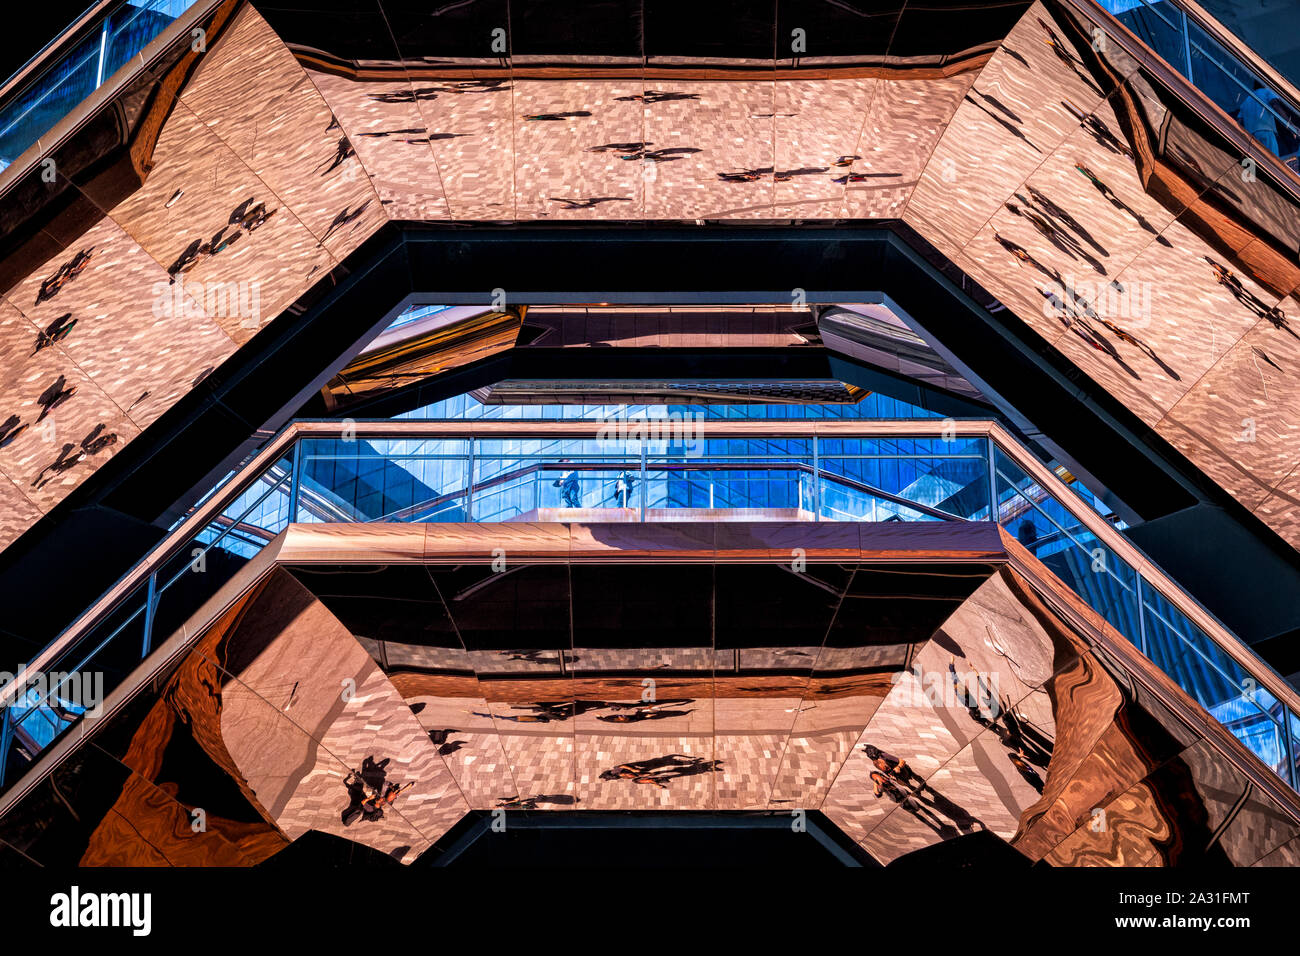 Abstract interiore del recipiente in cantieri di Hudson, Manhattan, New York City, Stati Uniti d'America. Foto Stock